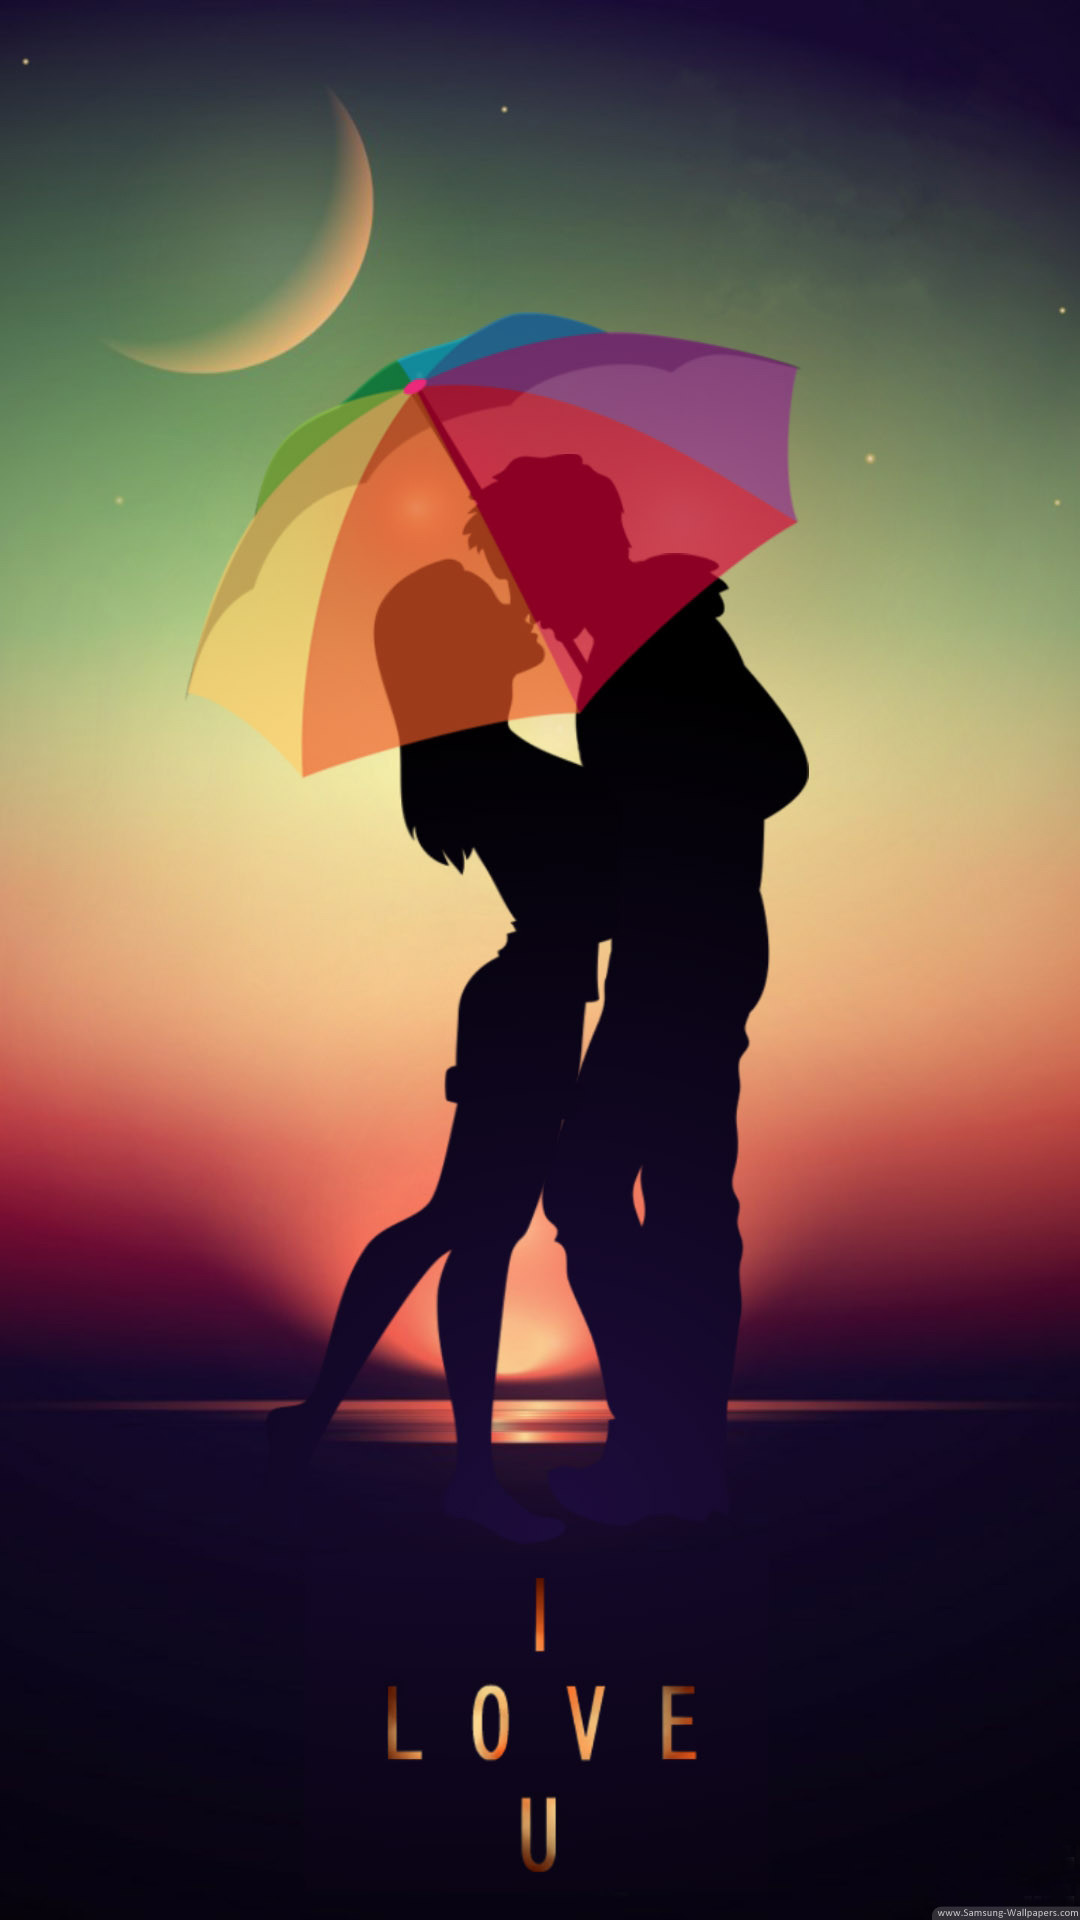 écran de verrouillage fond d'écran hd,parapluie,romance,affiche,ciel,amour